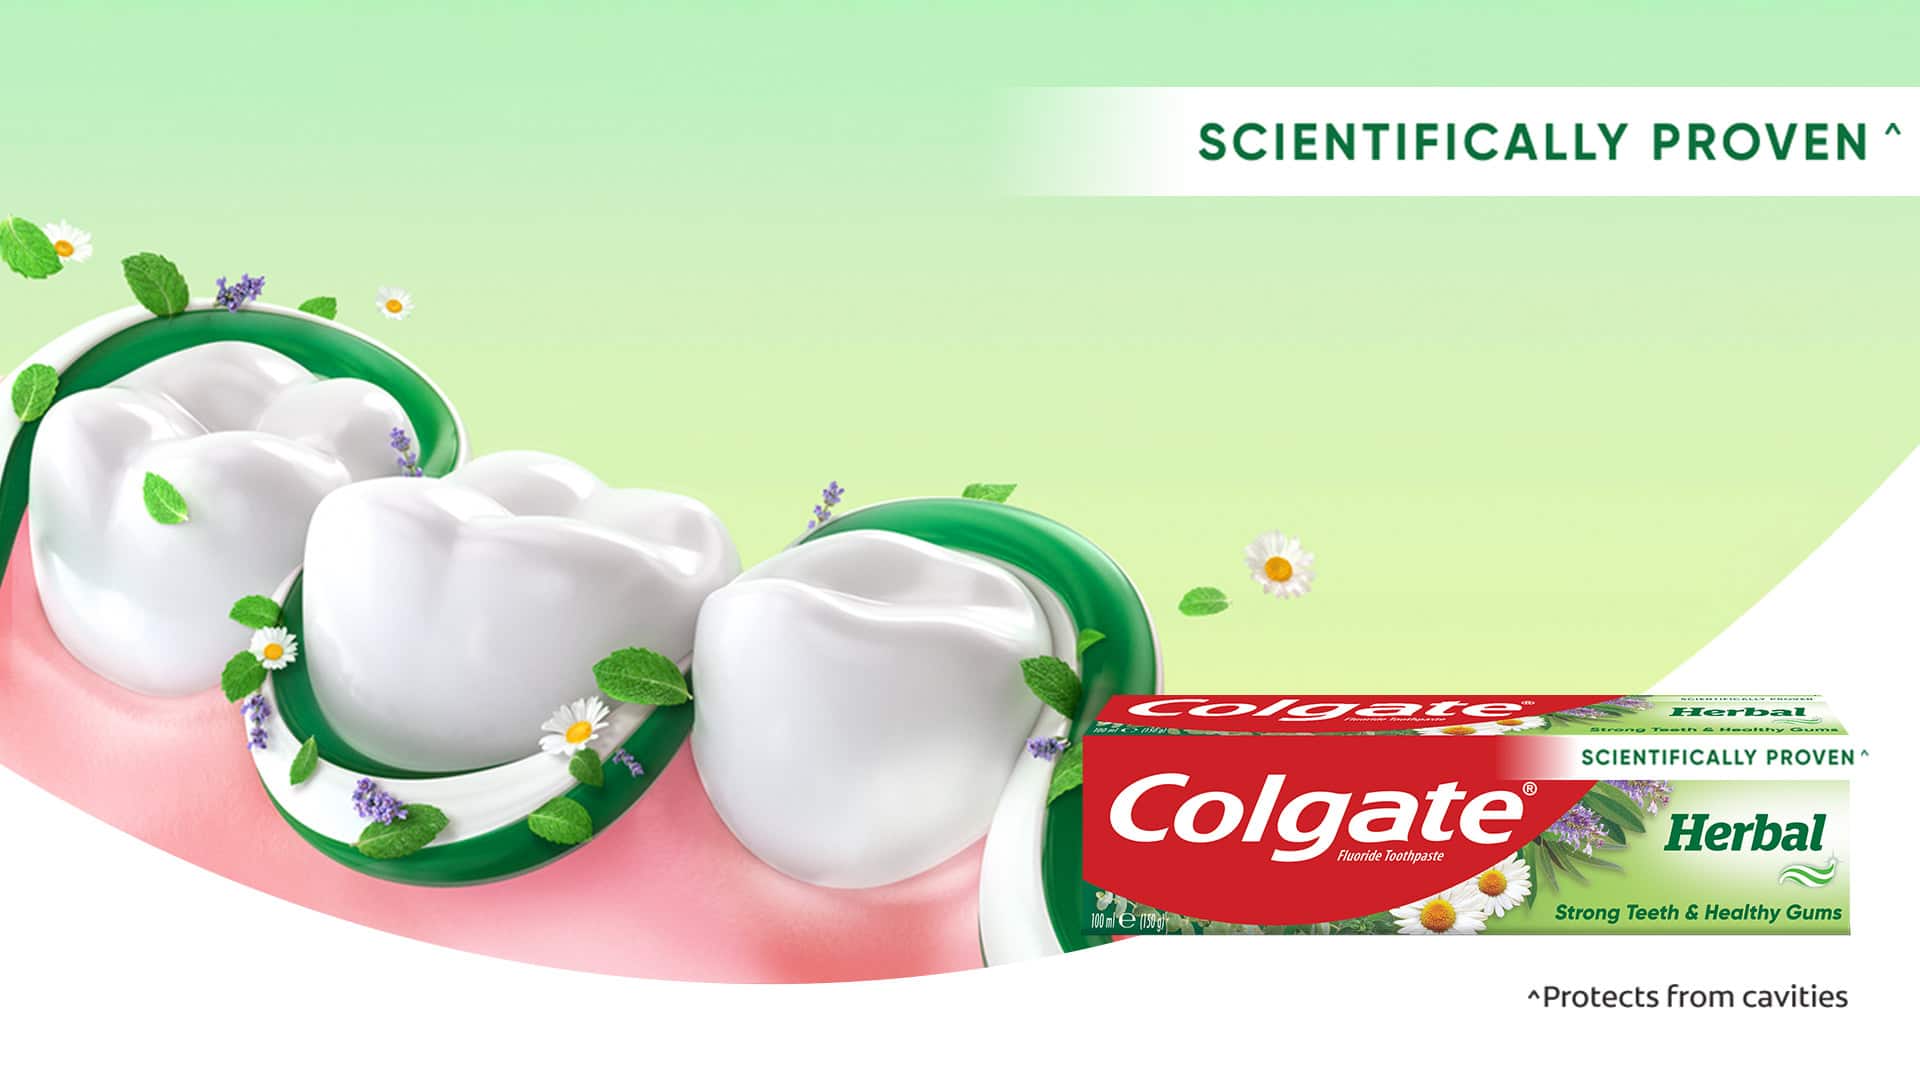 Colgate Herbal Strong Teeth & Healthy Gums